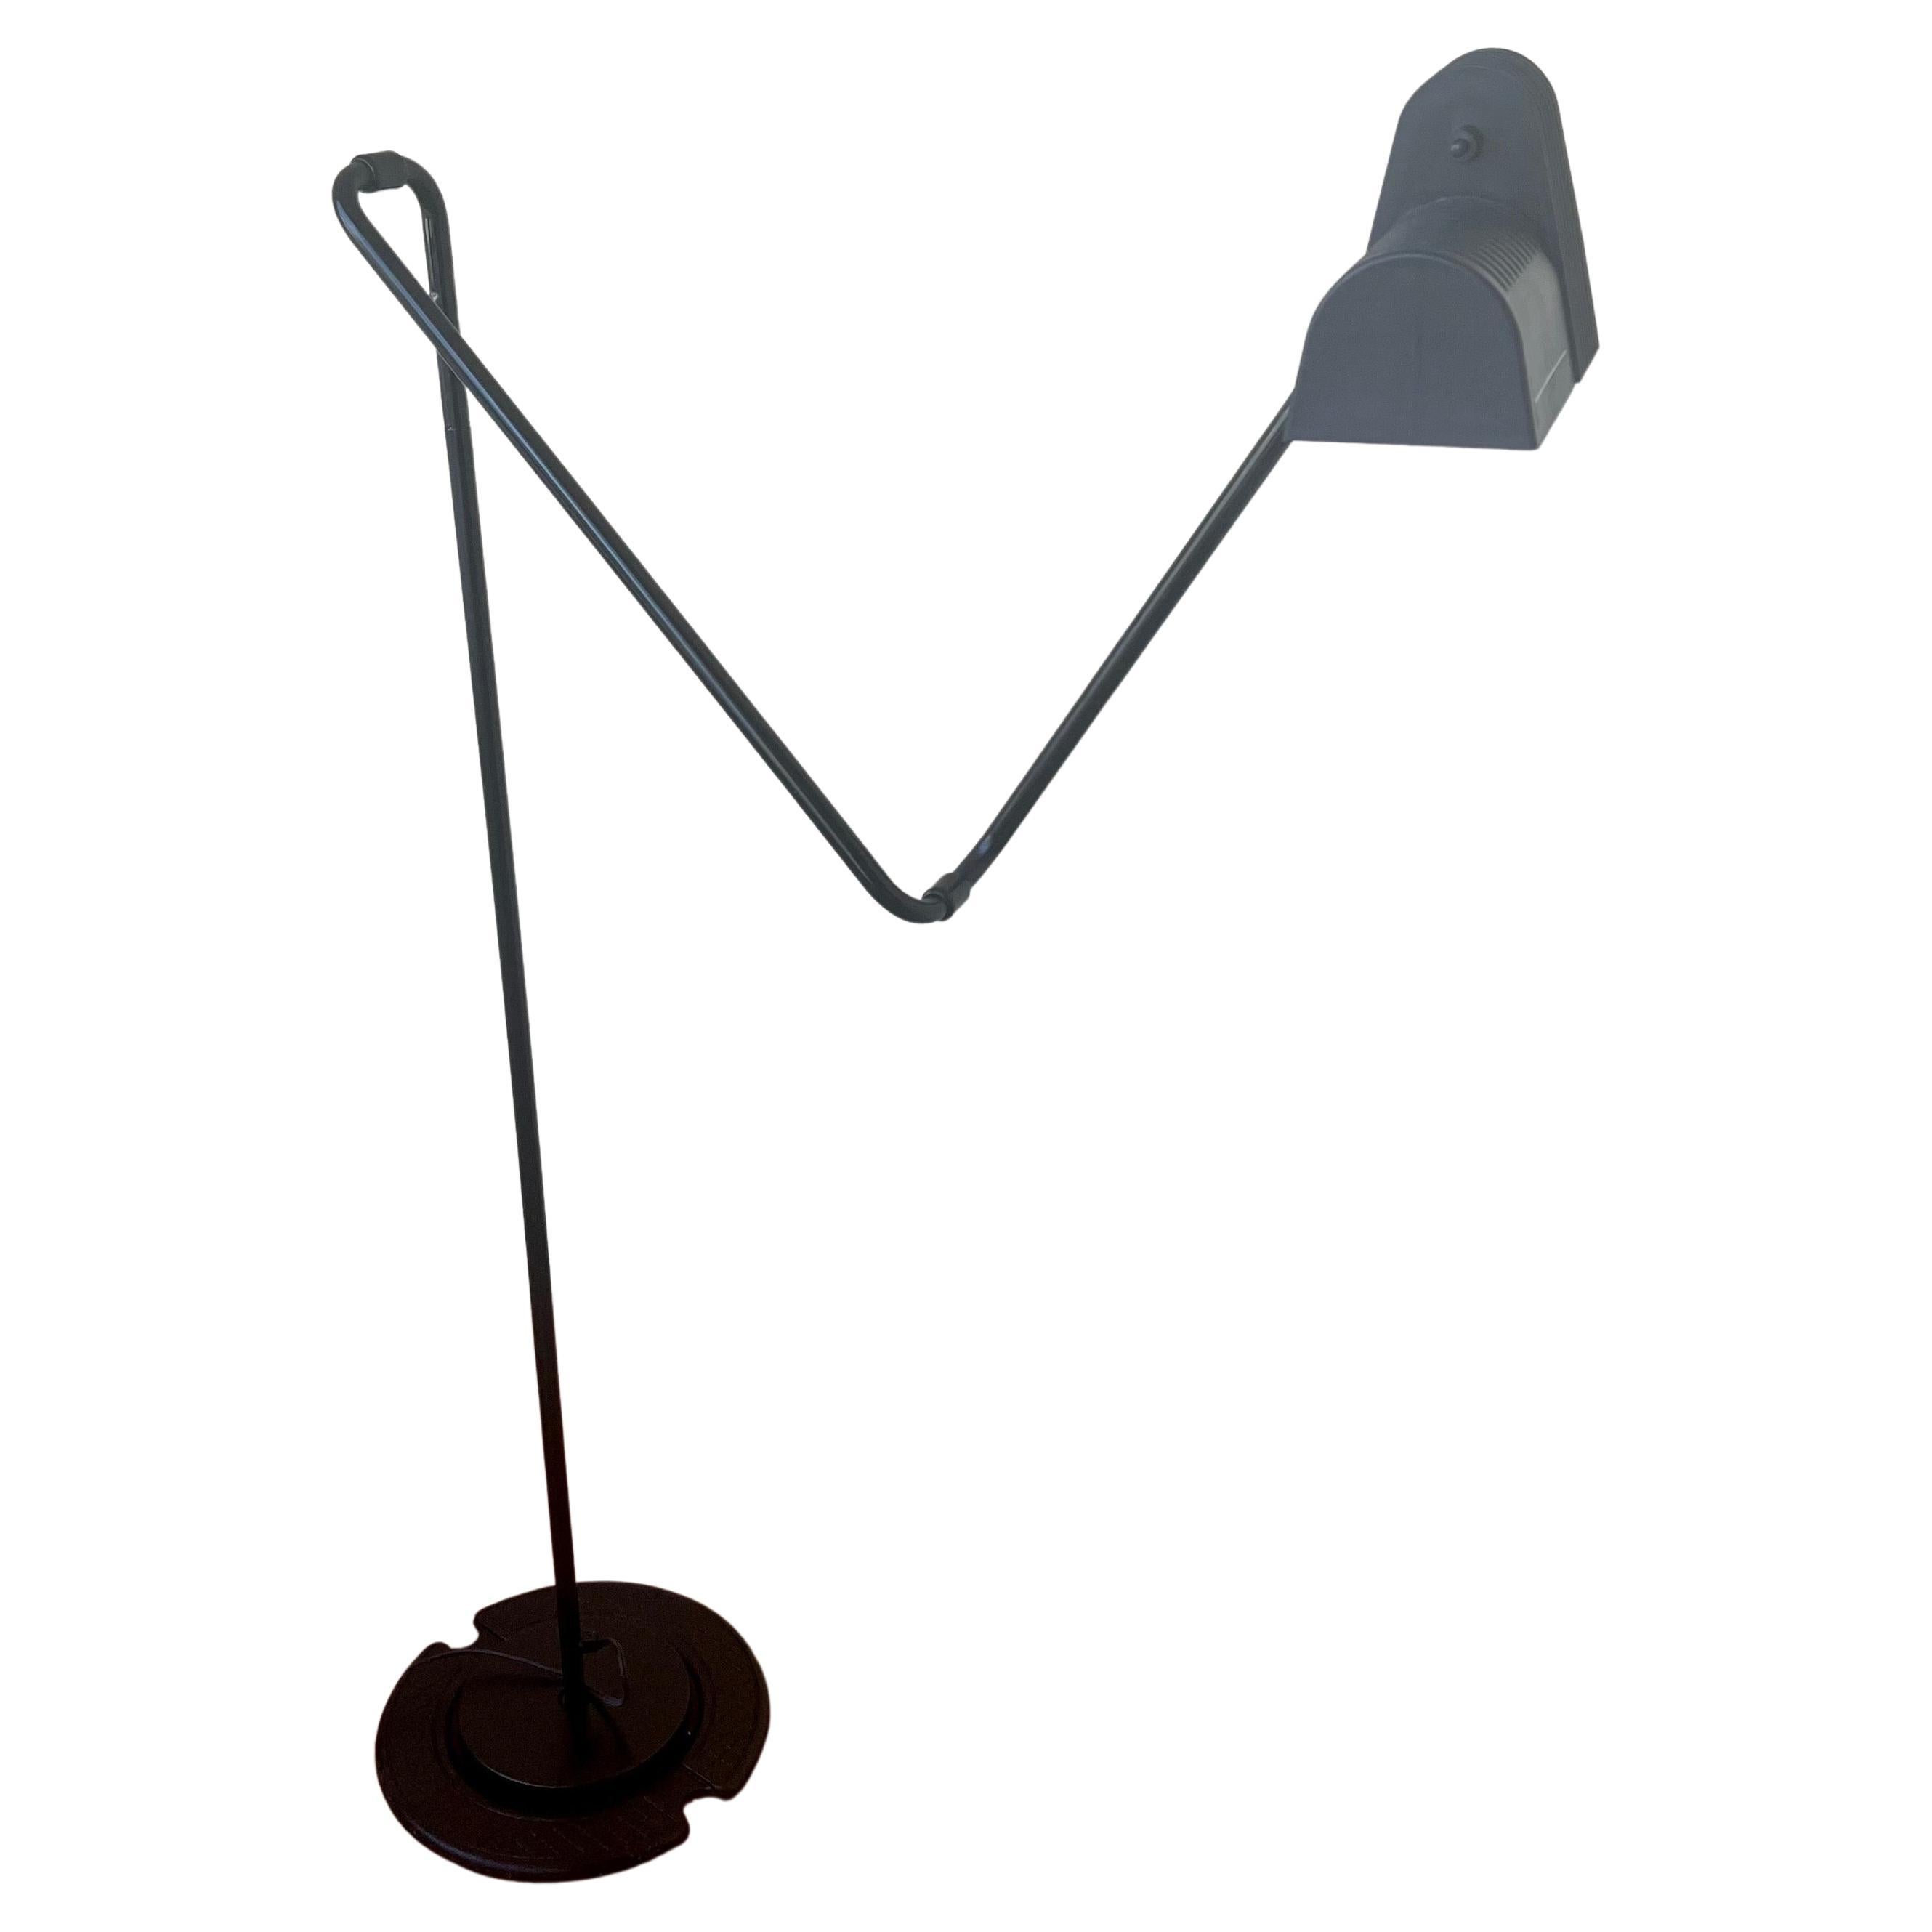 Rare Multidirectional Floor Clip Lamp by Hannes Wettstein for Belux